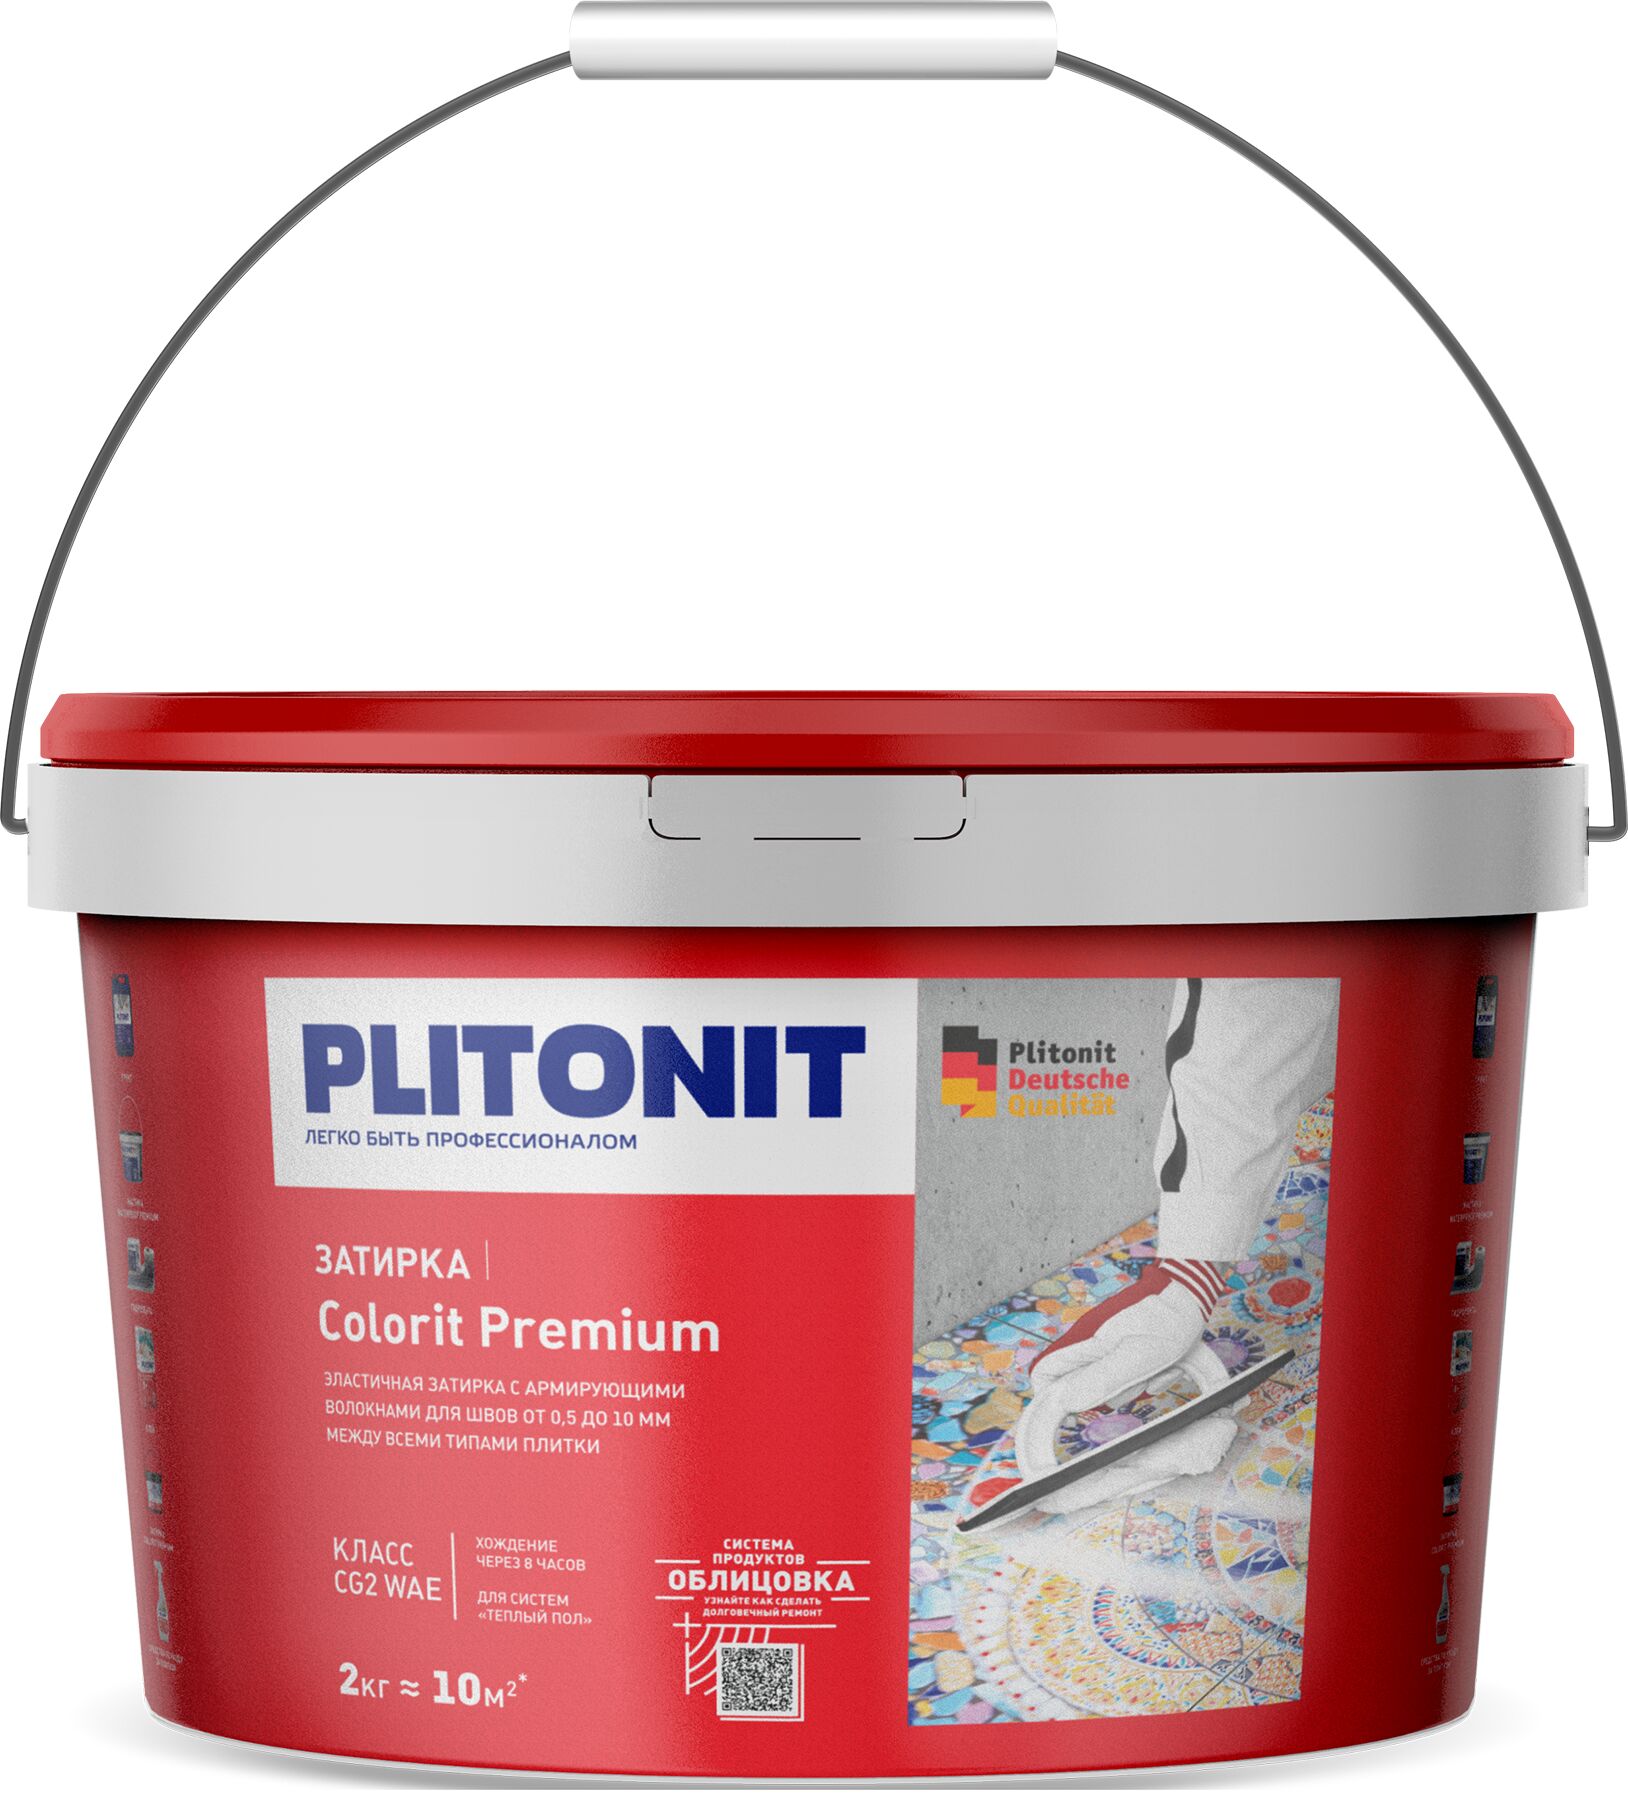 PLITONIT COLORIT Premium затирка биоцидная (0,5-13 мм) САЛАТОВАЯ -2, PLITONIT COLORIT Premium затирка биоцидная (0,5-13 мм) САЛАТОВАЯ -2